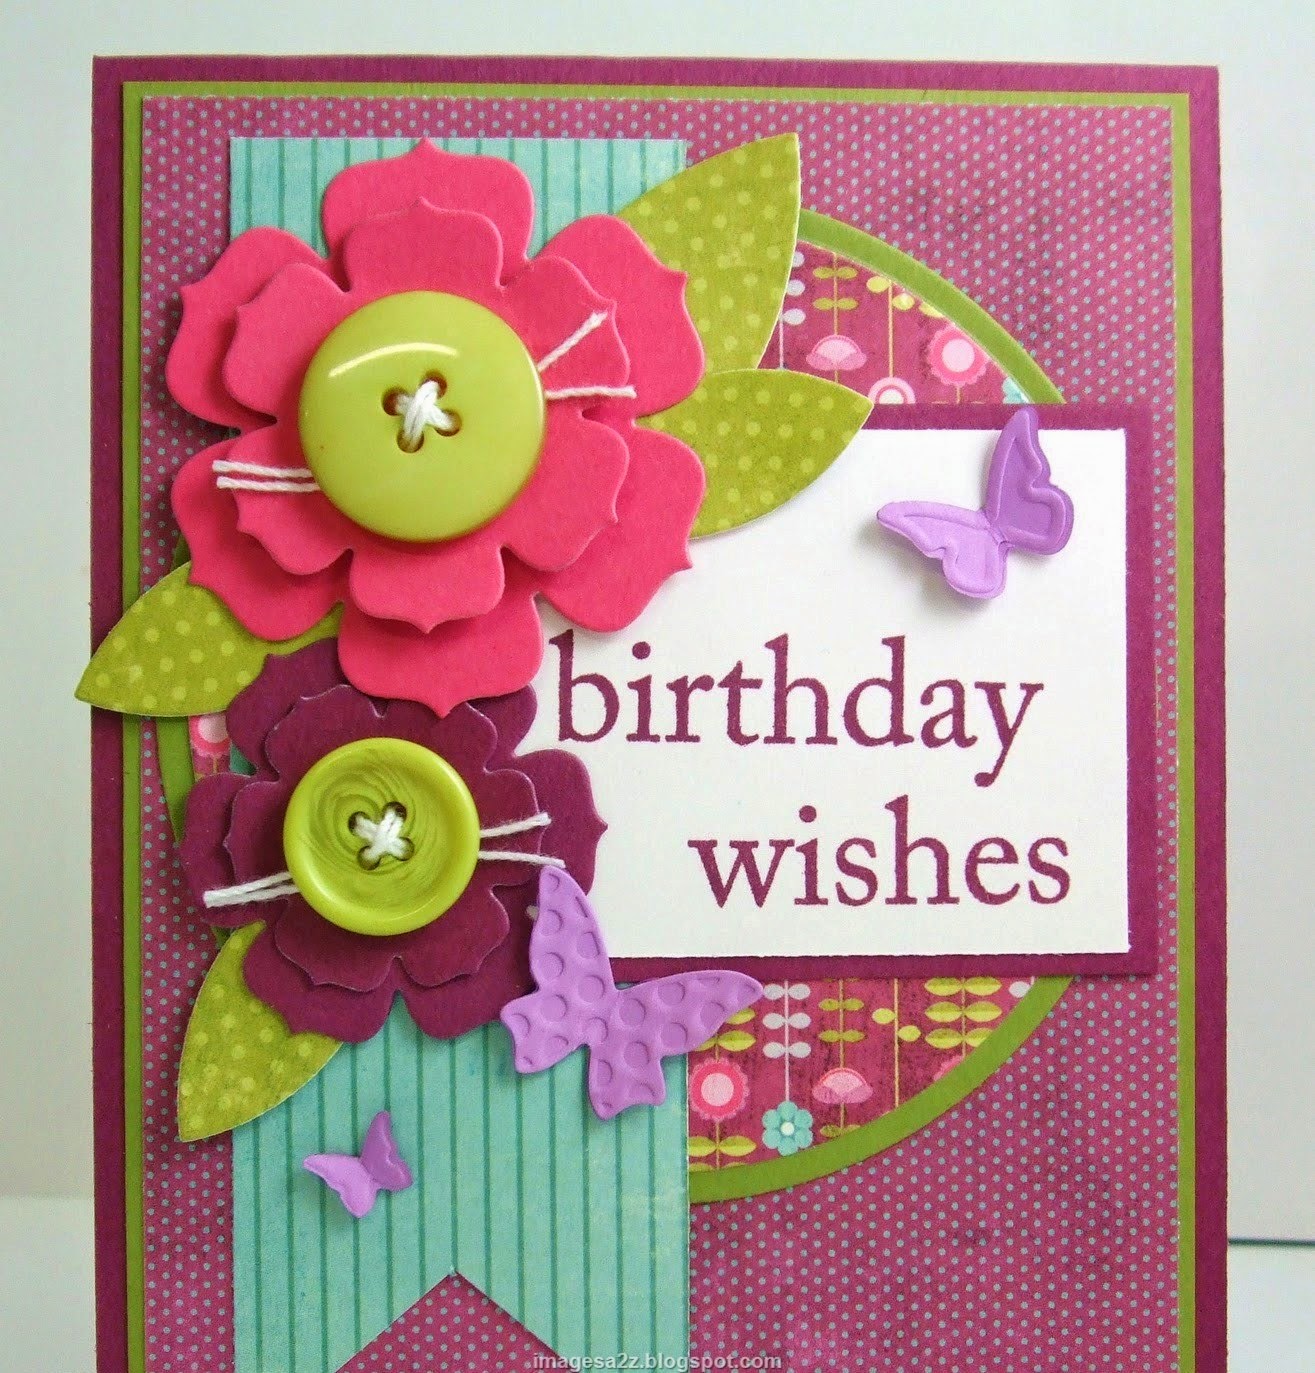 personalized-birthday-invitations-birthday-postcards-happy-birthday